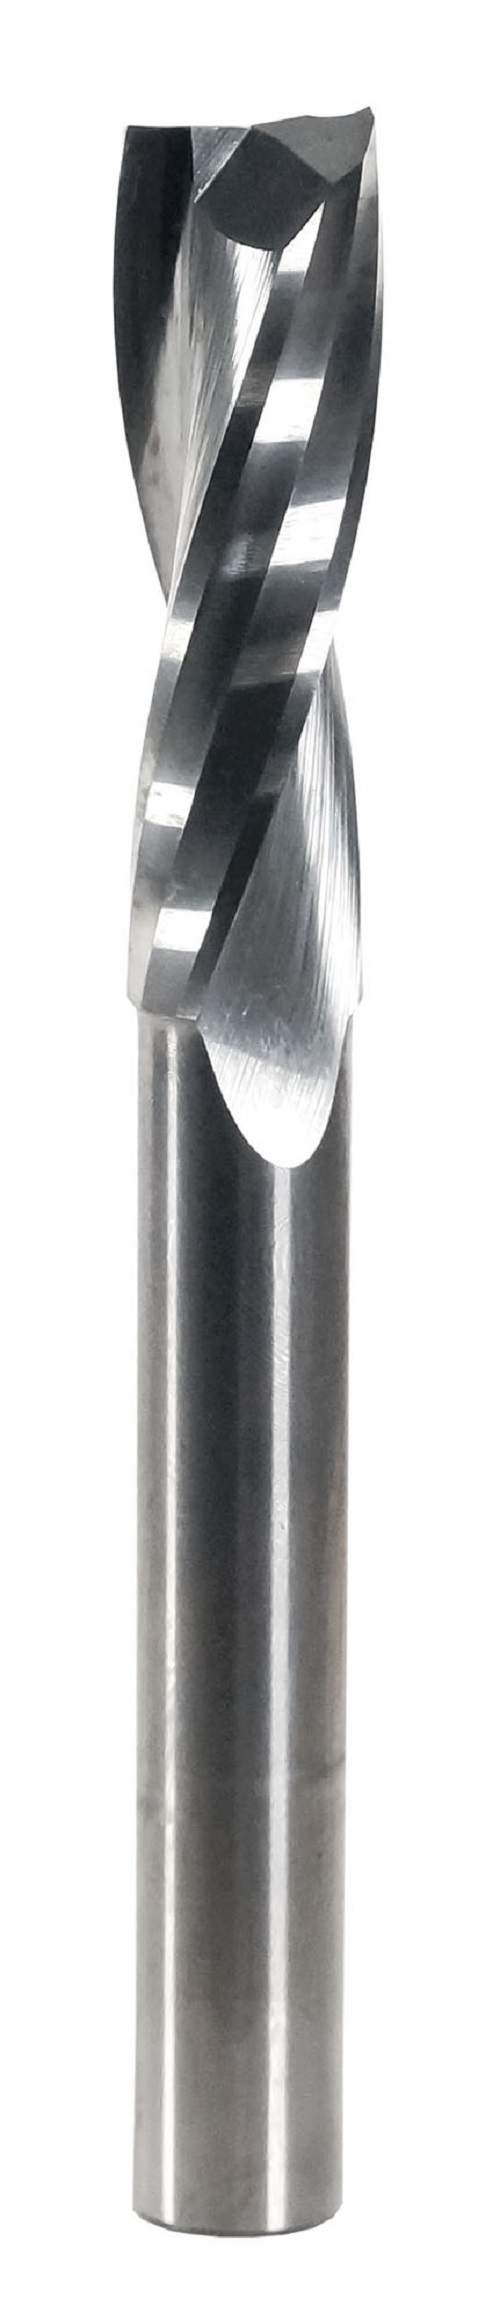 Фреза спиральная твердосплавная Энкор Z2 верхний рез ф10х32 мм хв.8 46653 фреза для маникюра безопасная 4 грани 1 2 × 2 5 мм в пластиковом футляре